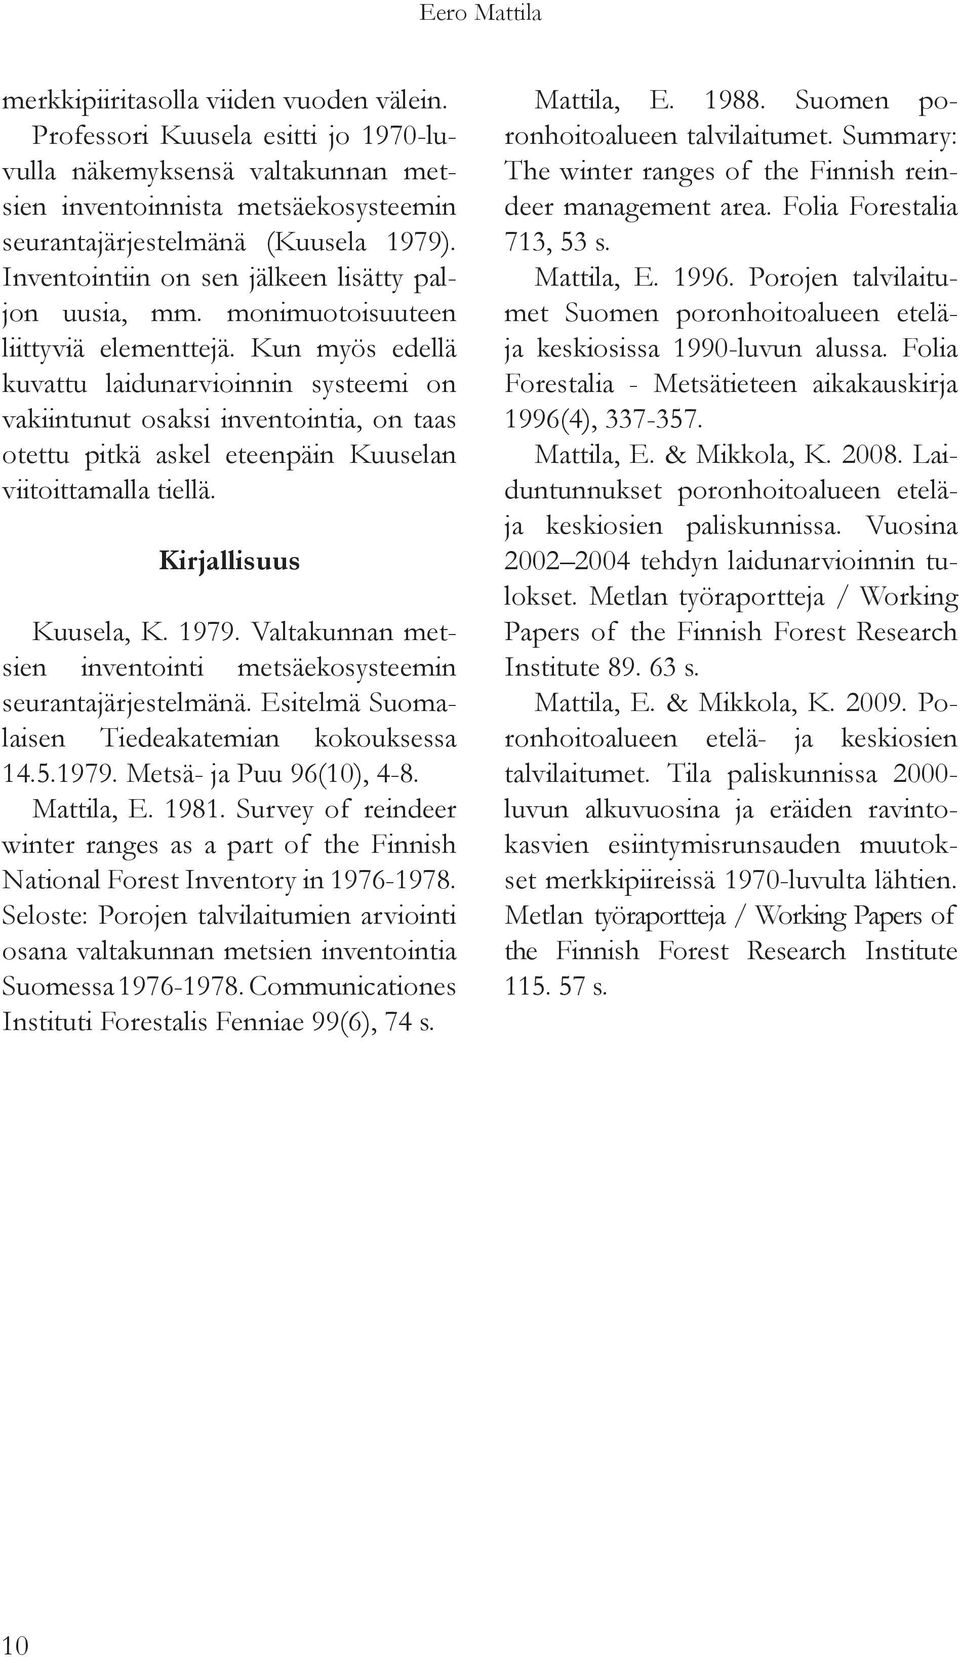 Kun myös edellä kuvattu laidunarvioinnin systeemi on vakiintunut osaksi inventointia, on taas otettu pitkä askel eteenpäin Kuuselan viitoittamalla tiellä. Kirjallisuus Kuusela, K. 1979.